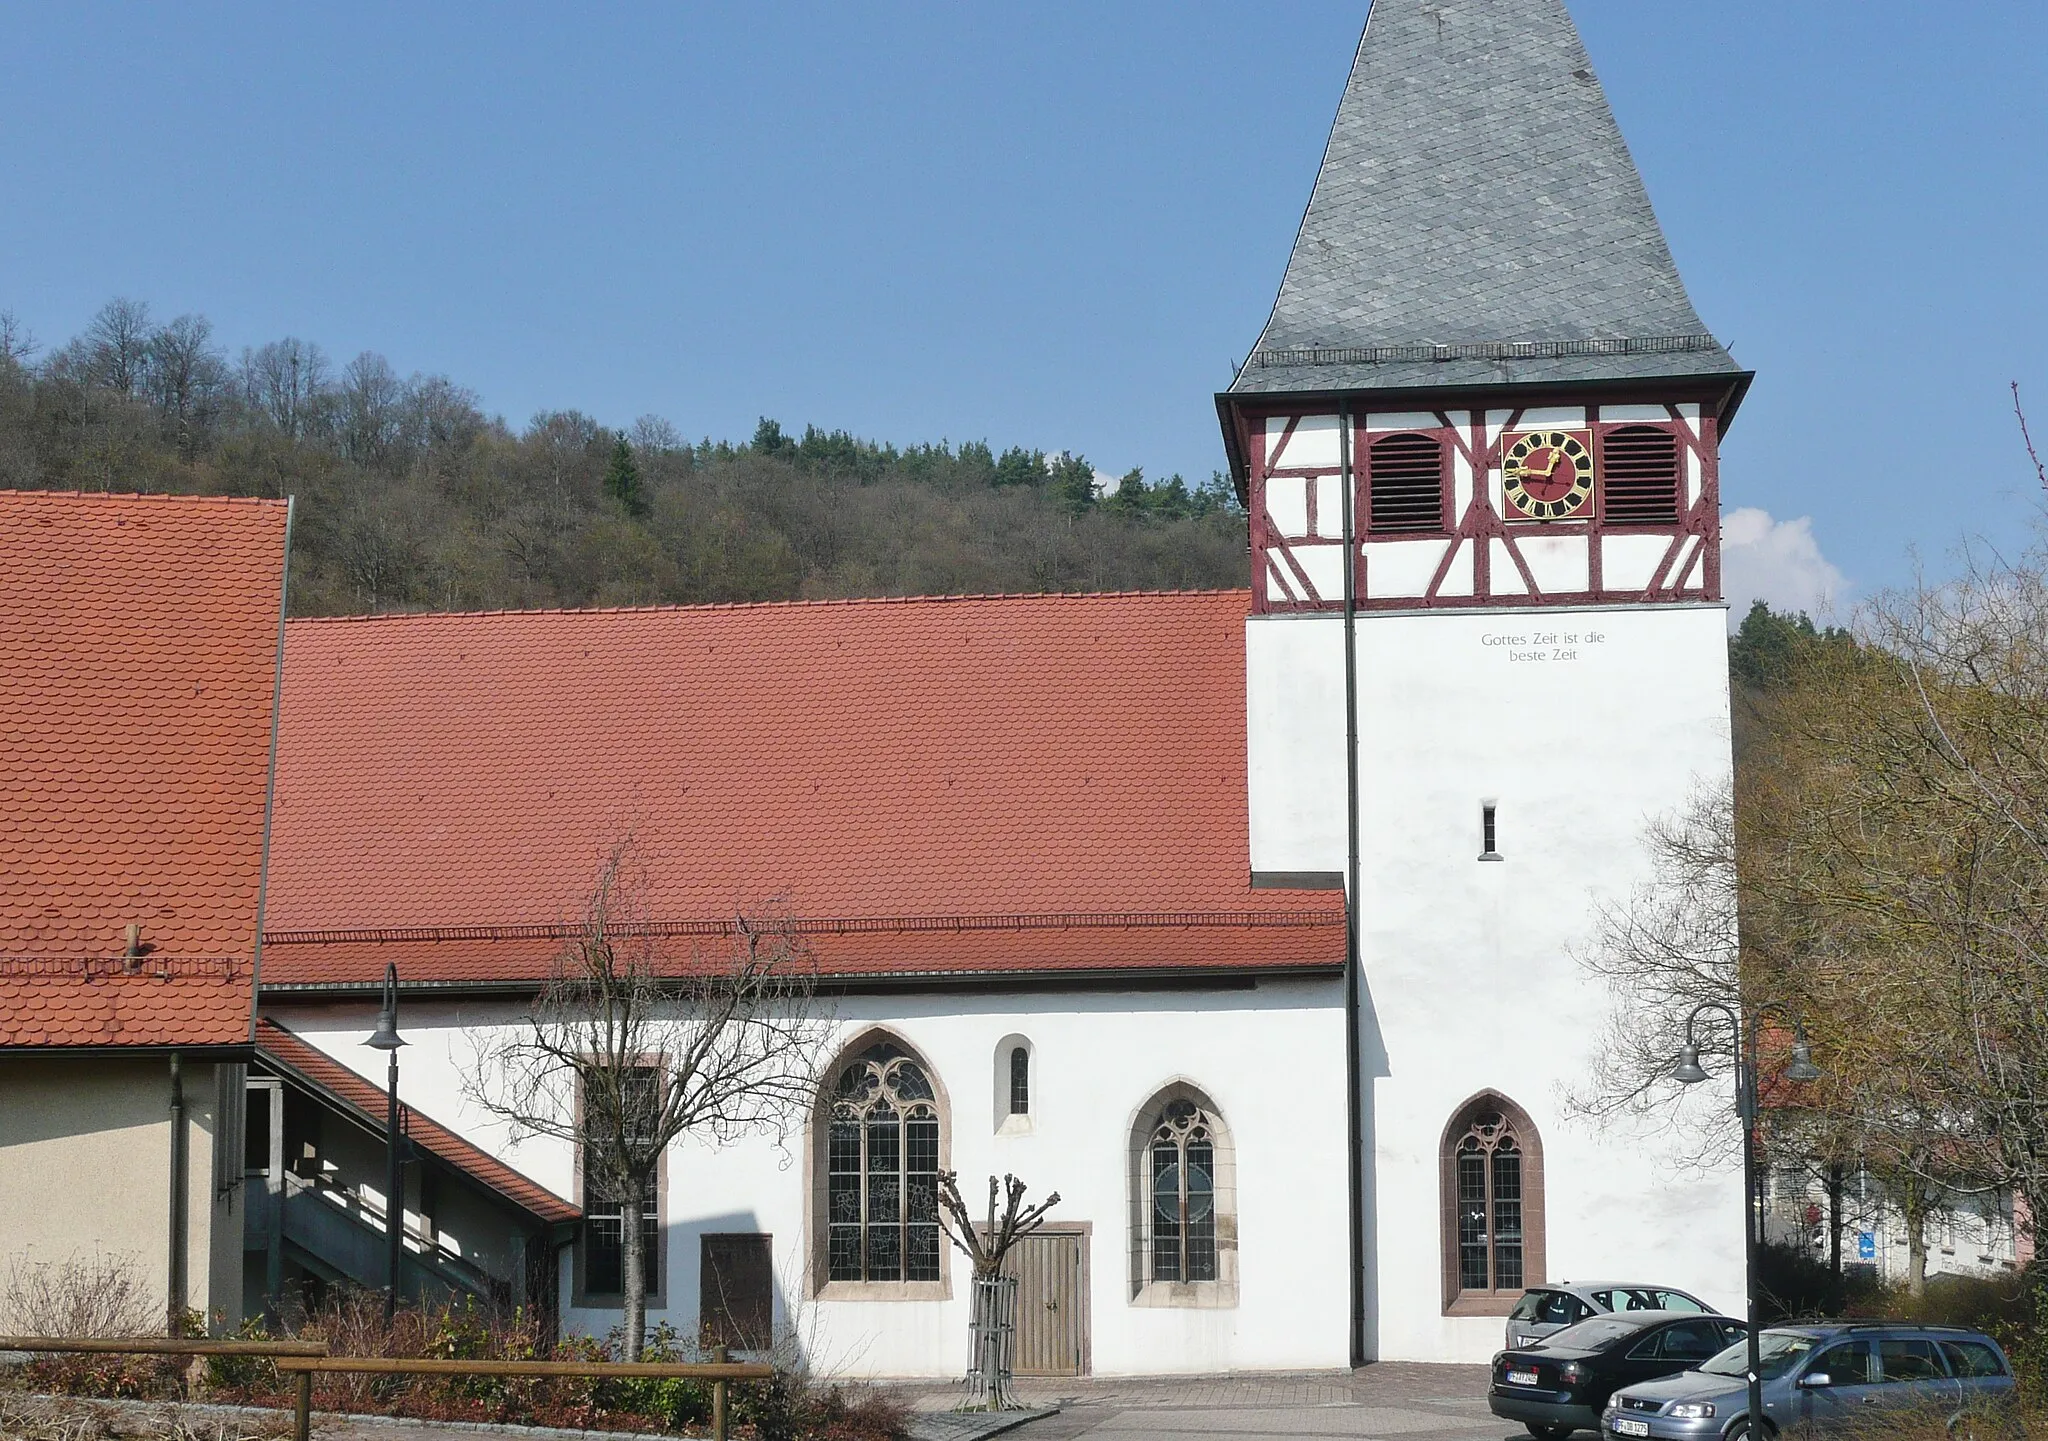 Photo showing: Evangelische Nikolauskirche in Mönsheim, erbaut um 1050-1100,  mit der Inschrift: Gottes Zeit ist die beste Zeit